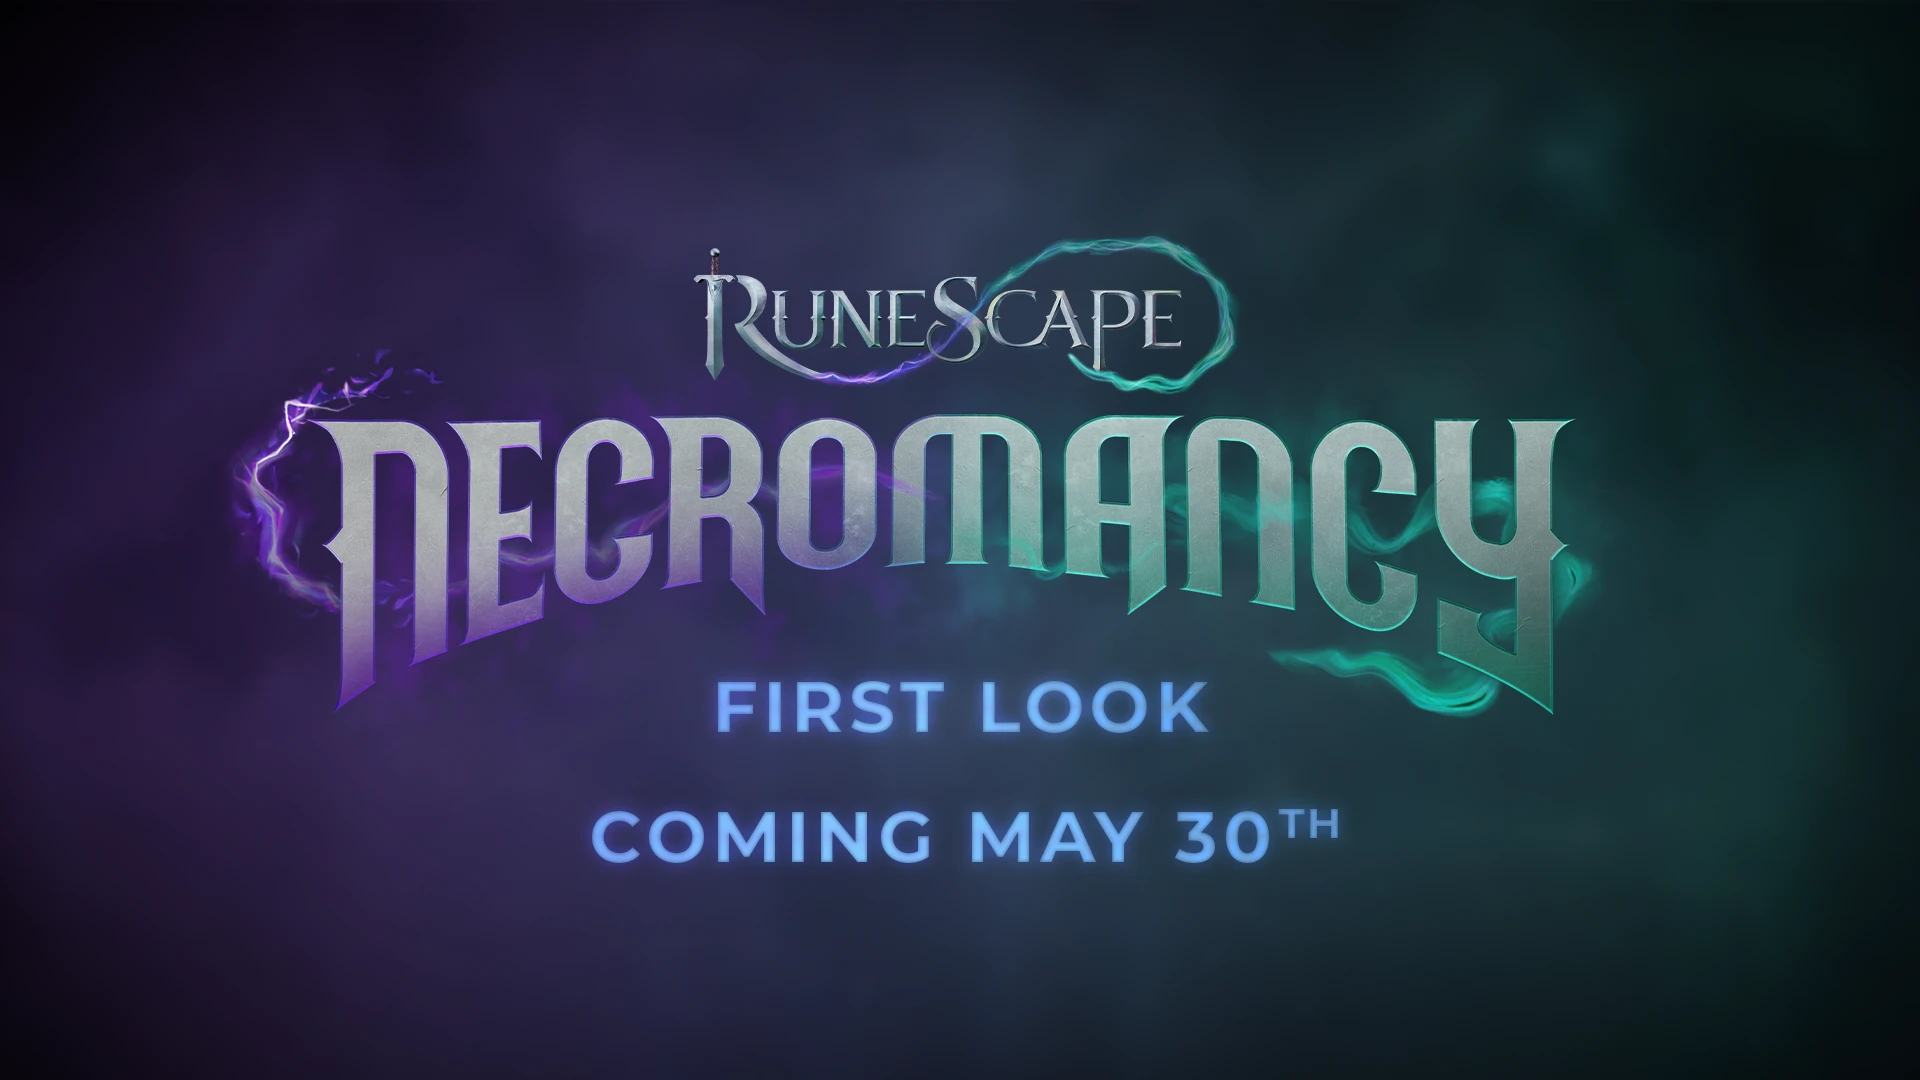 Runescape: Necromancy Details Revealed 10